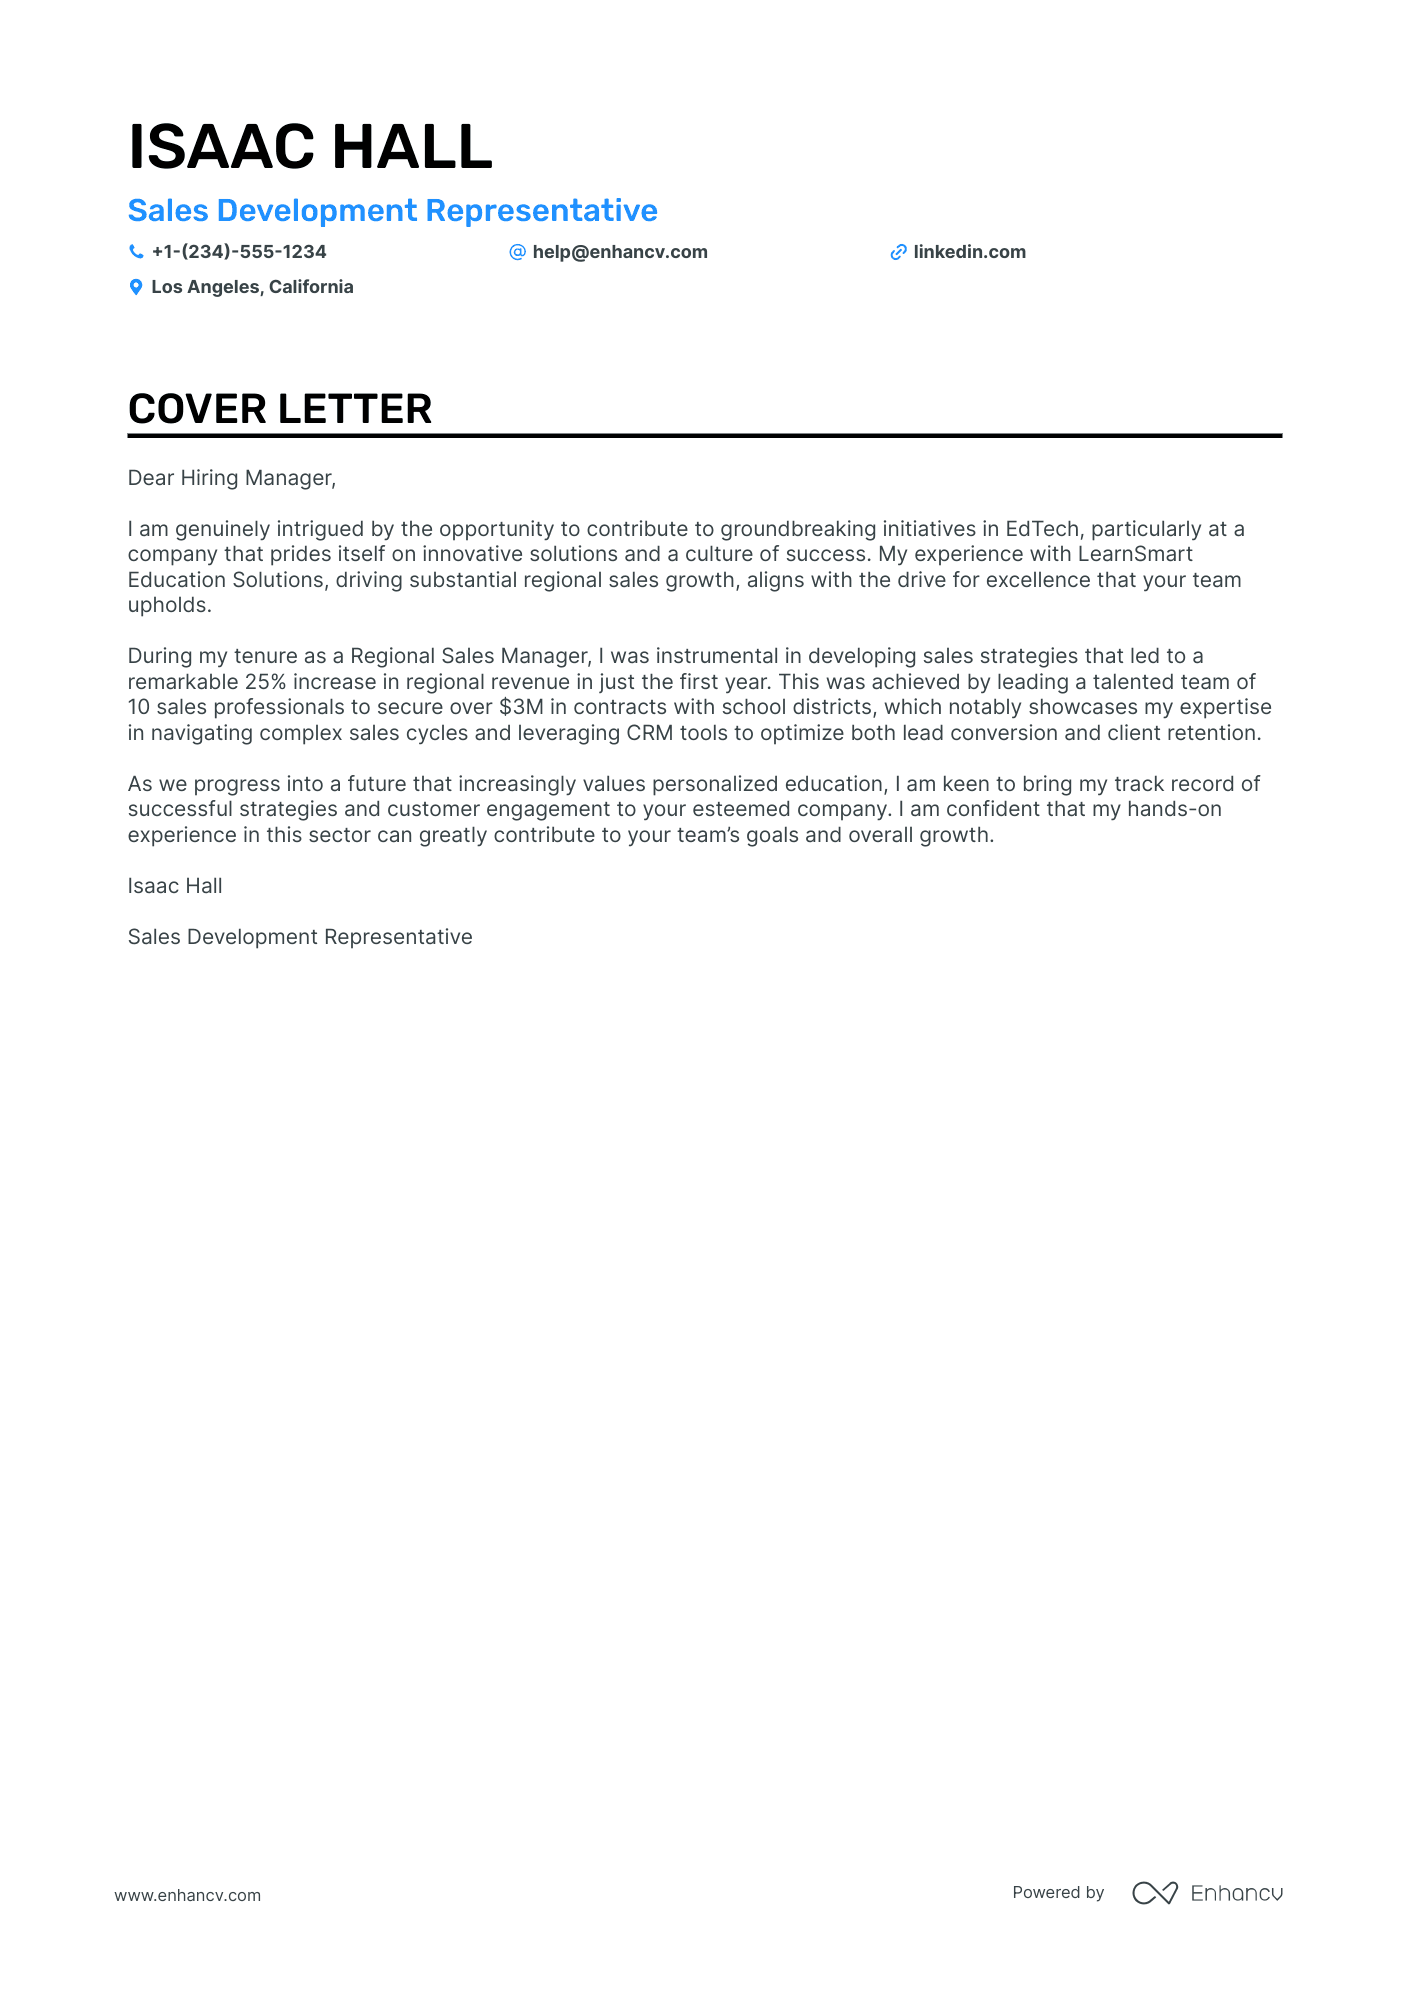 cover letter teaching address